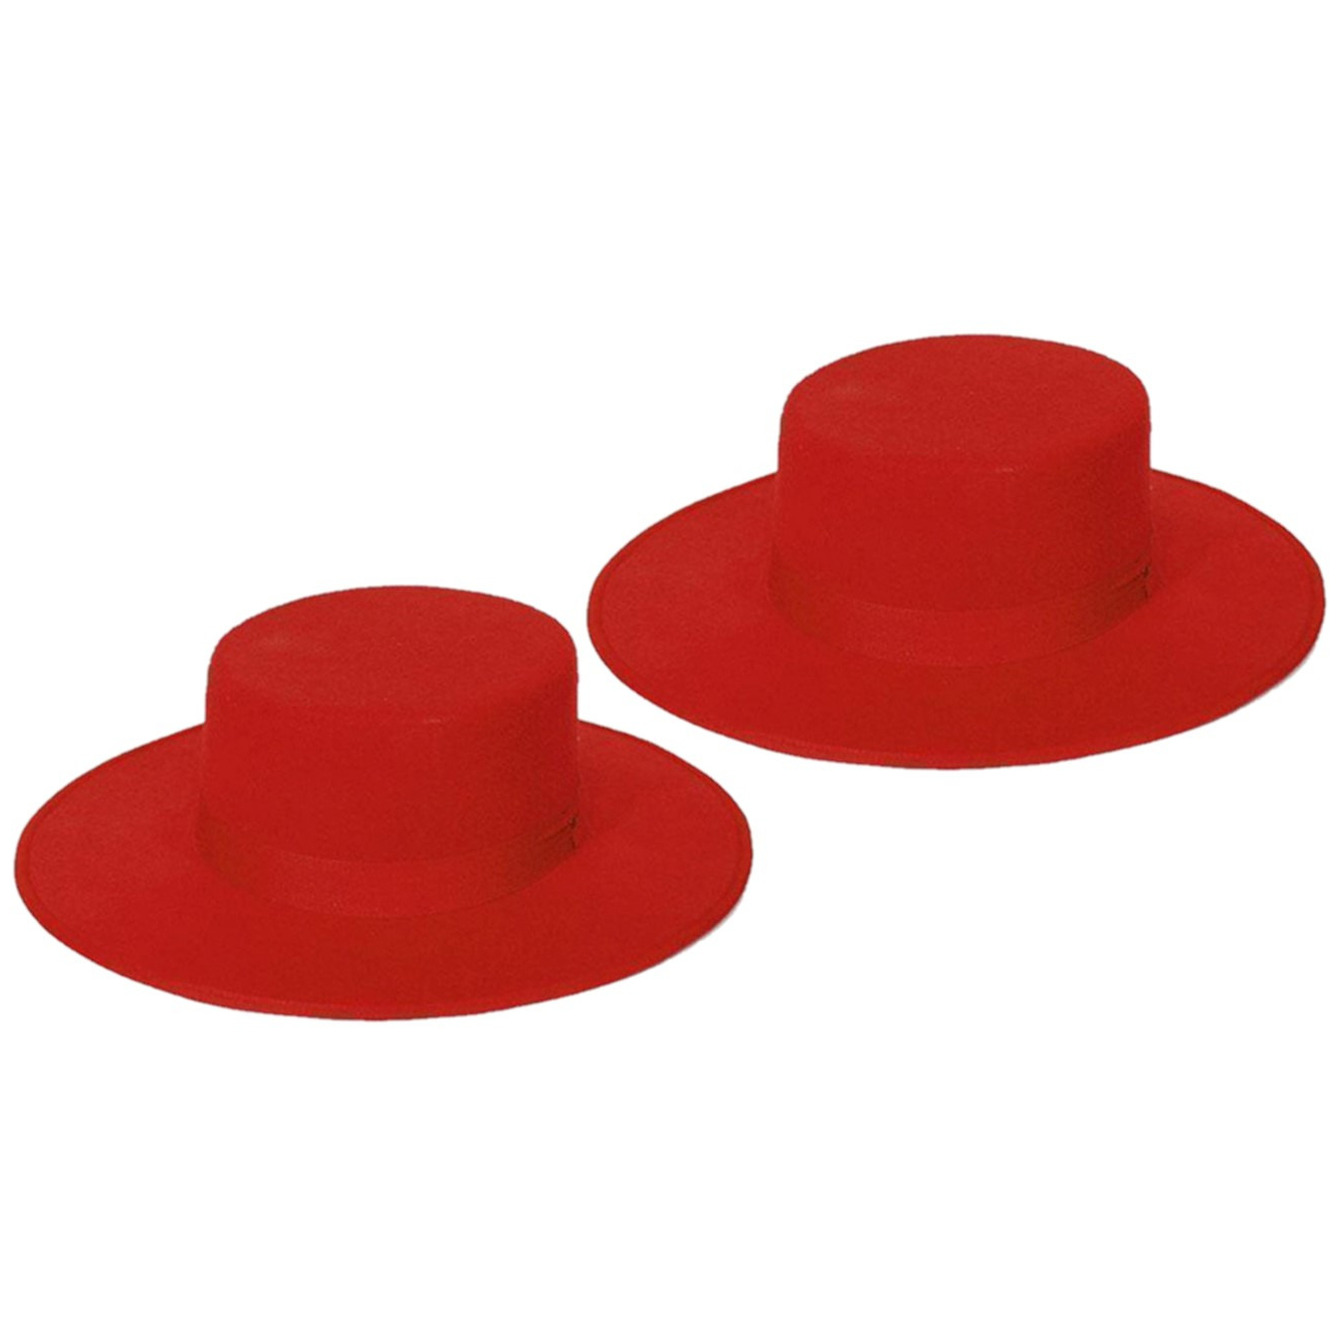 2x stuks Spaanse verkleed hoed rood voor volwassenen